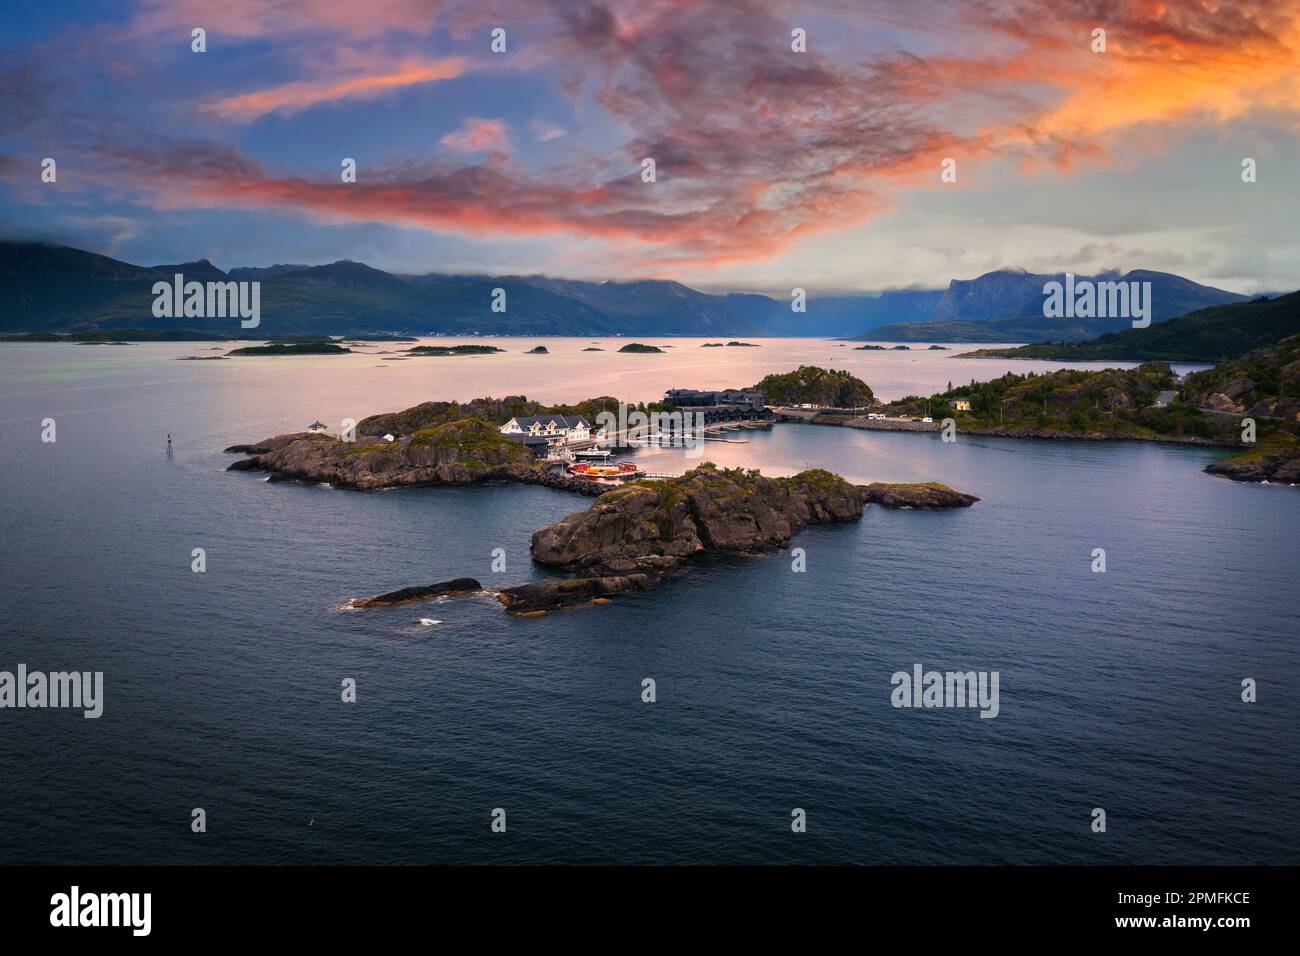 Vue aérienne au coucher du soleil sur le village de Hamn i Senja, sur l'île de Senja en Norvège Banque D'Images